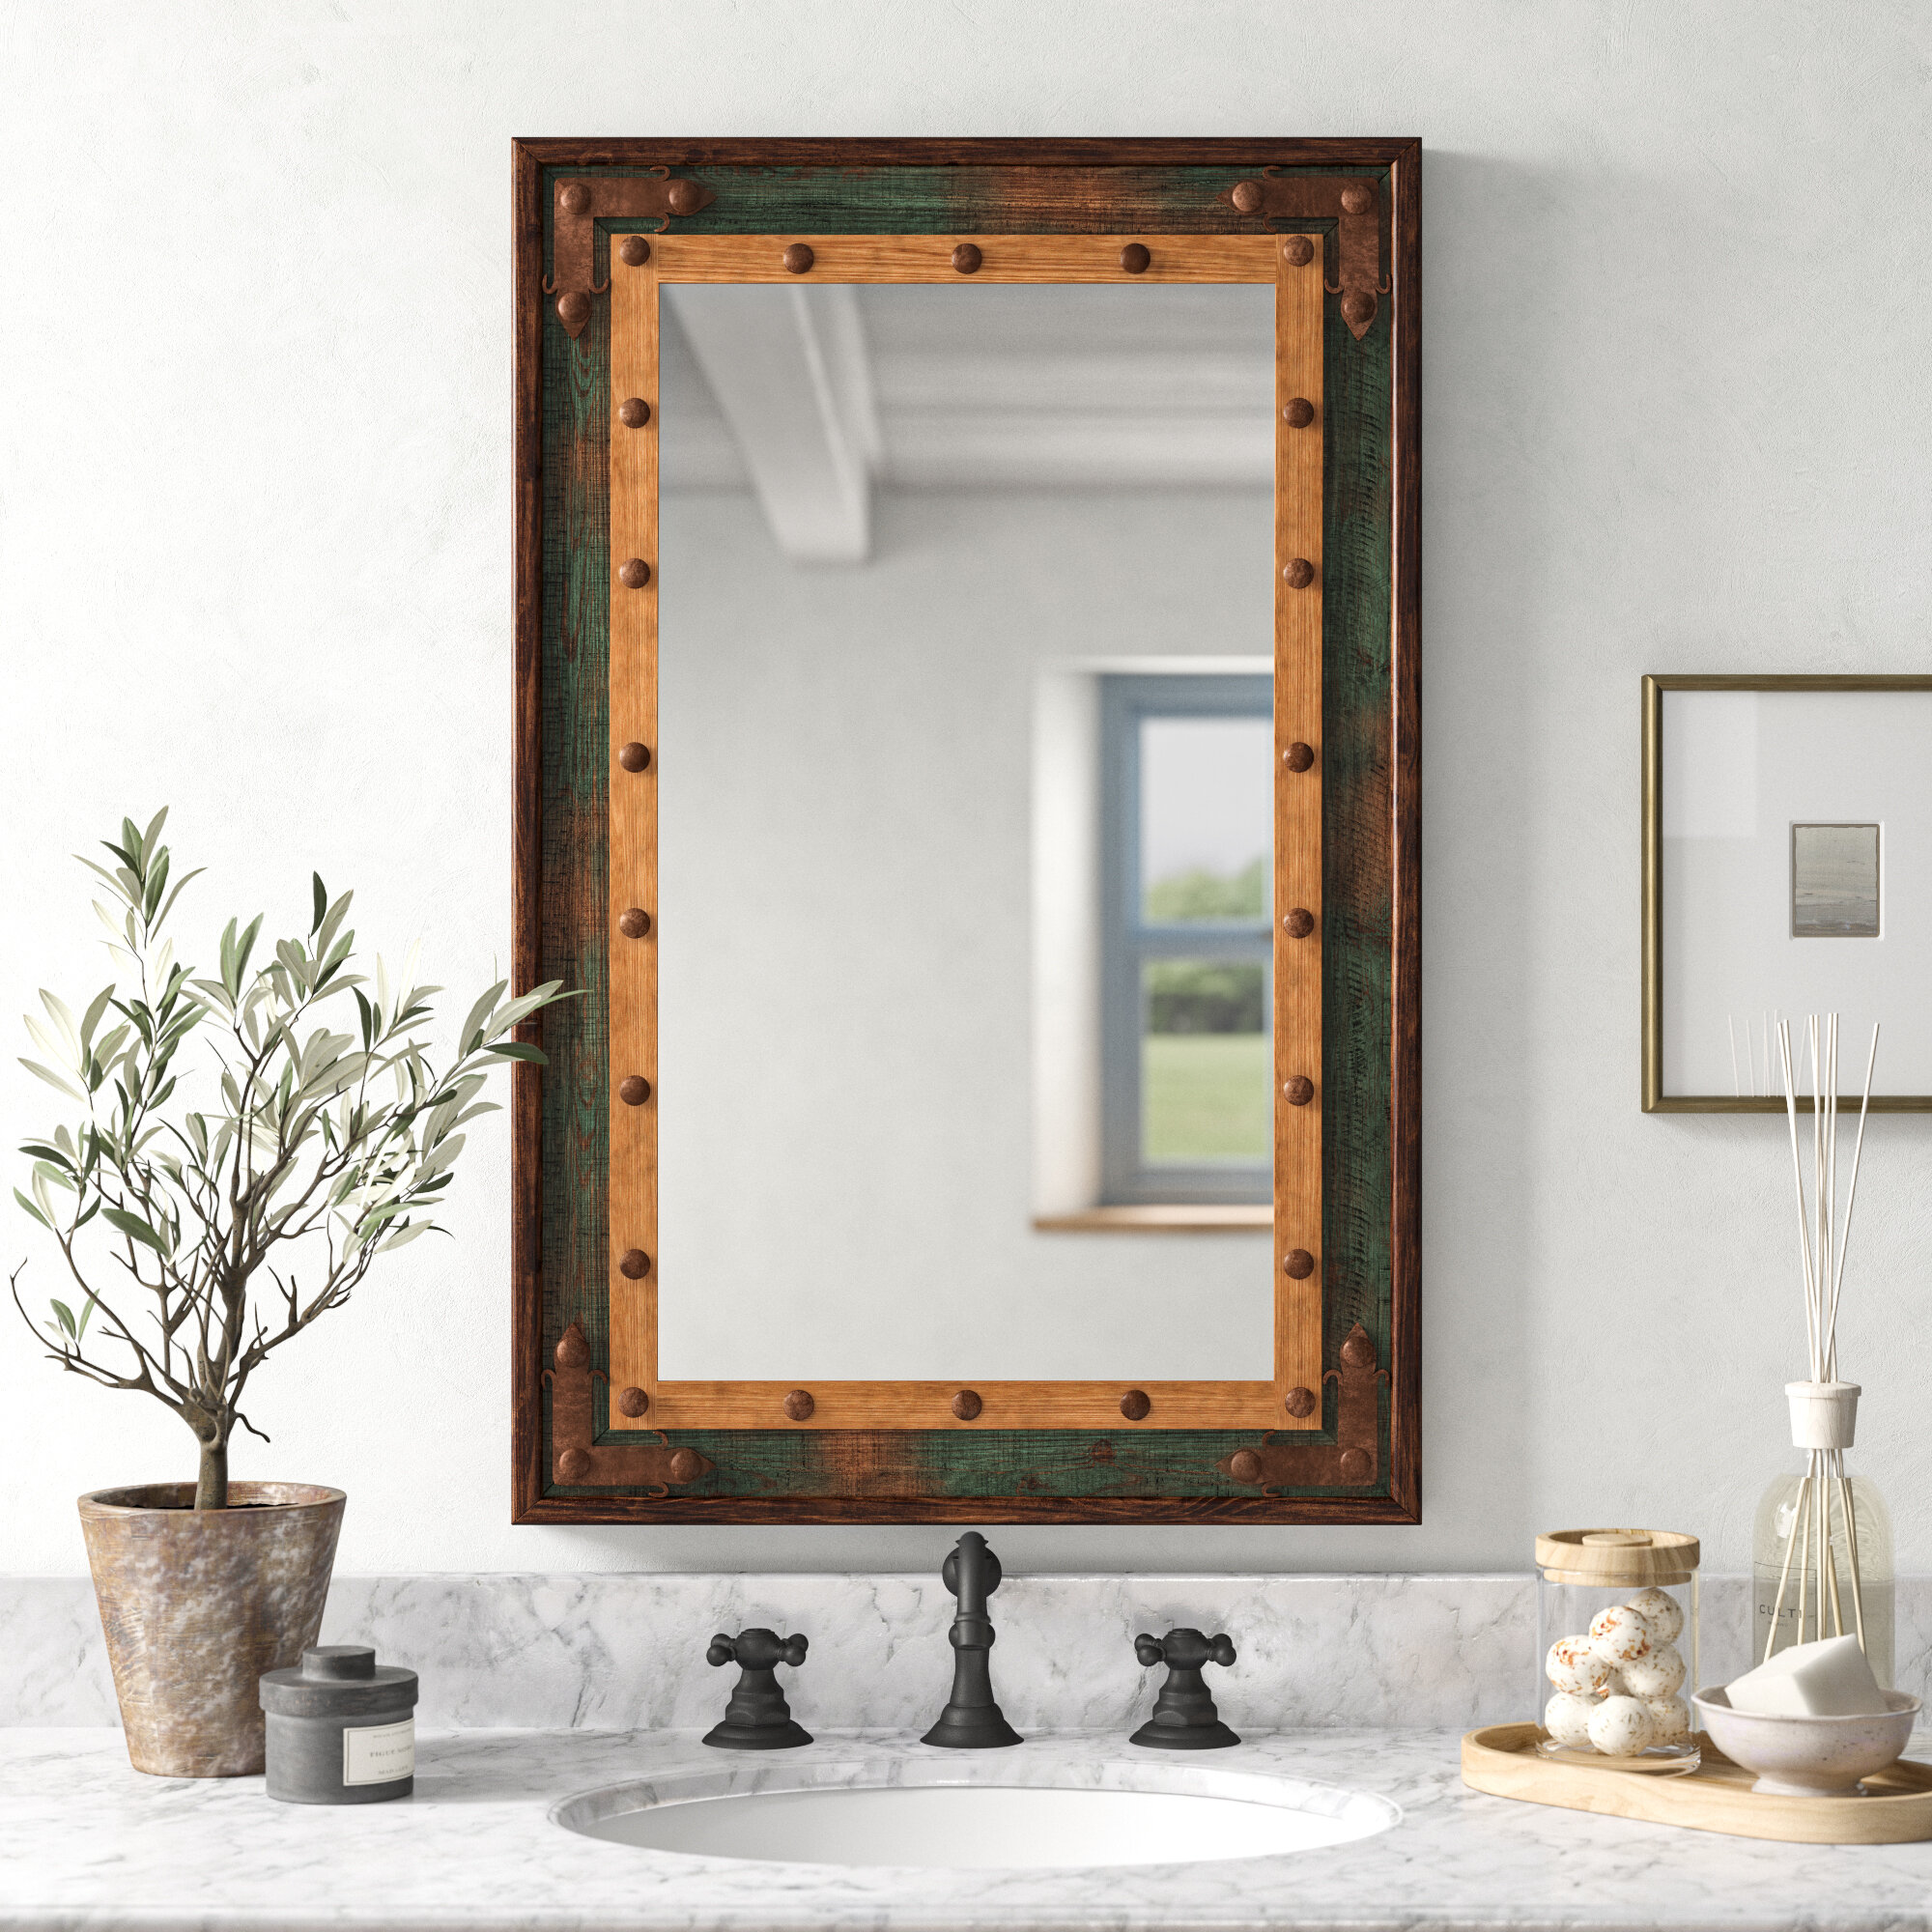 Millwood Pines Adrushan Rustic Distressed Bathroom/Vanity Mirror & Reviews  | Wayfair